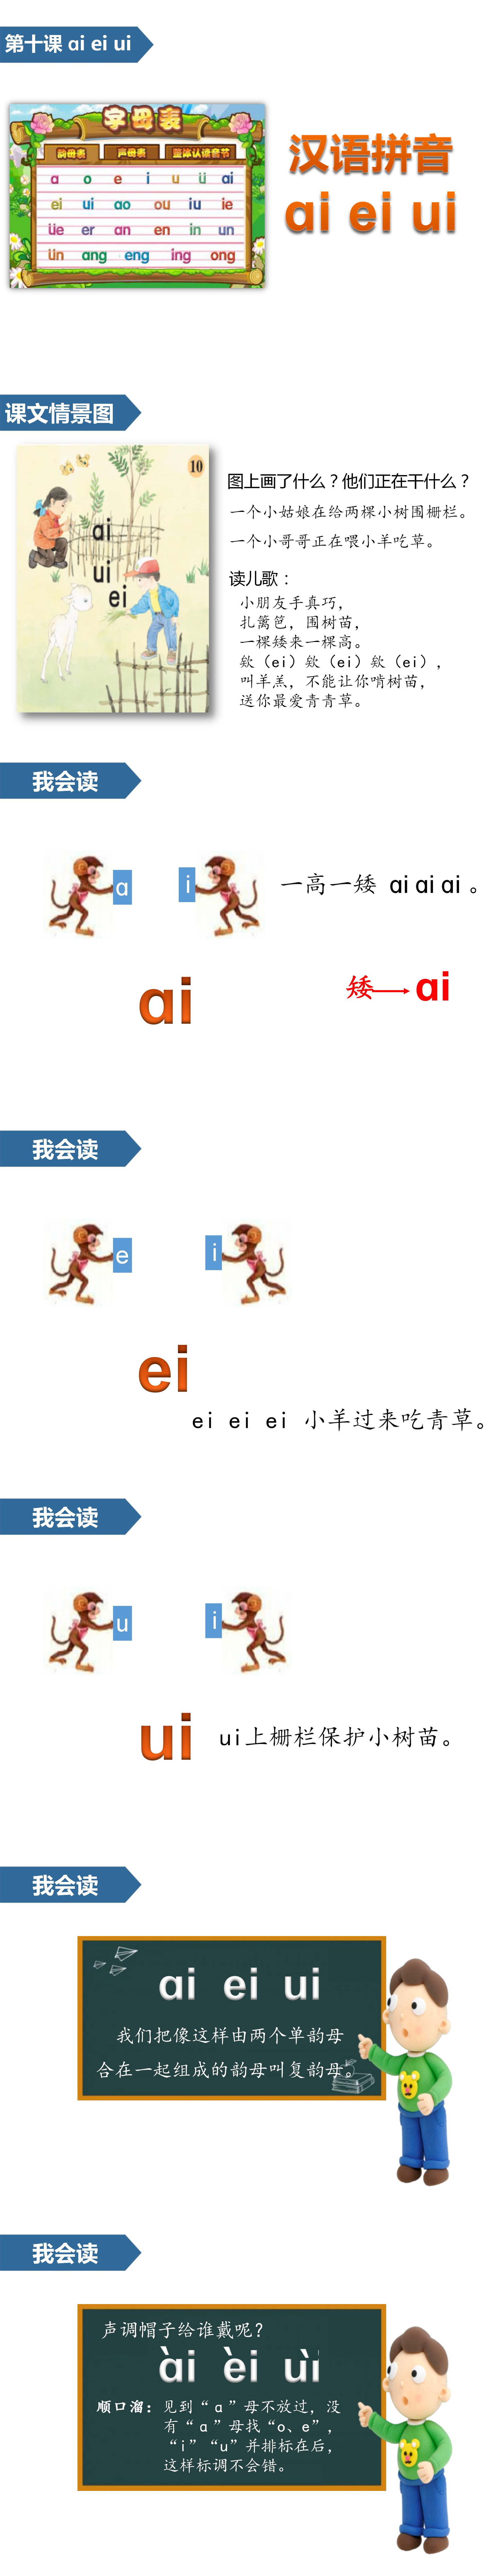 苏教版语文课件《aieiui》汉语拼音PPT模板PPT课件下载